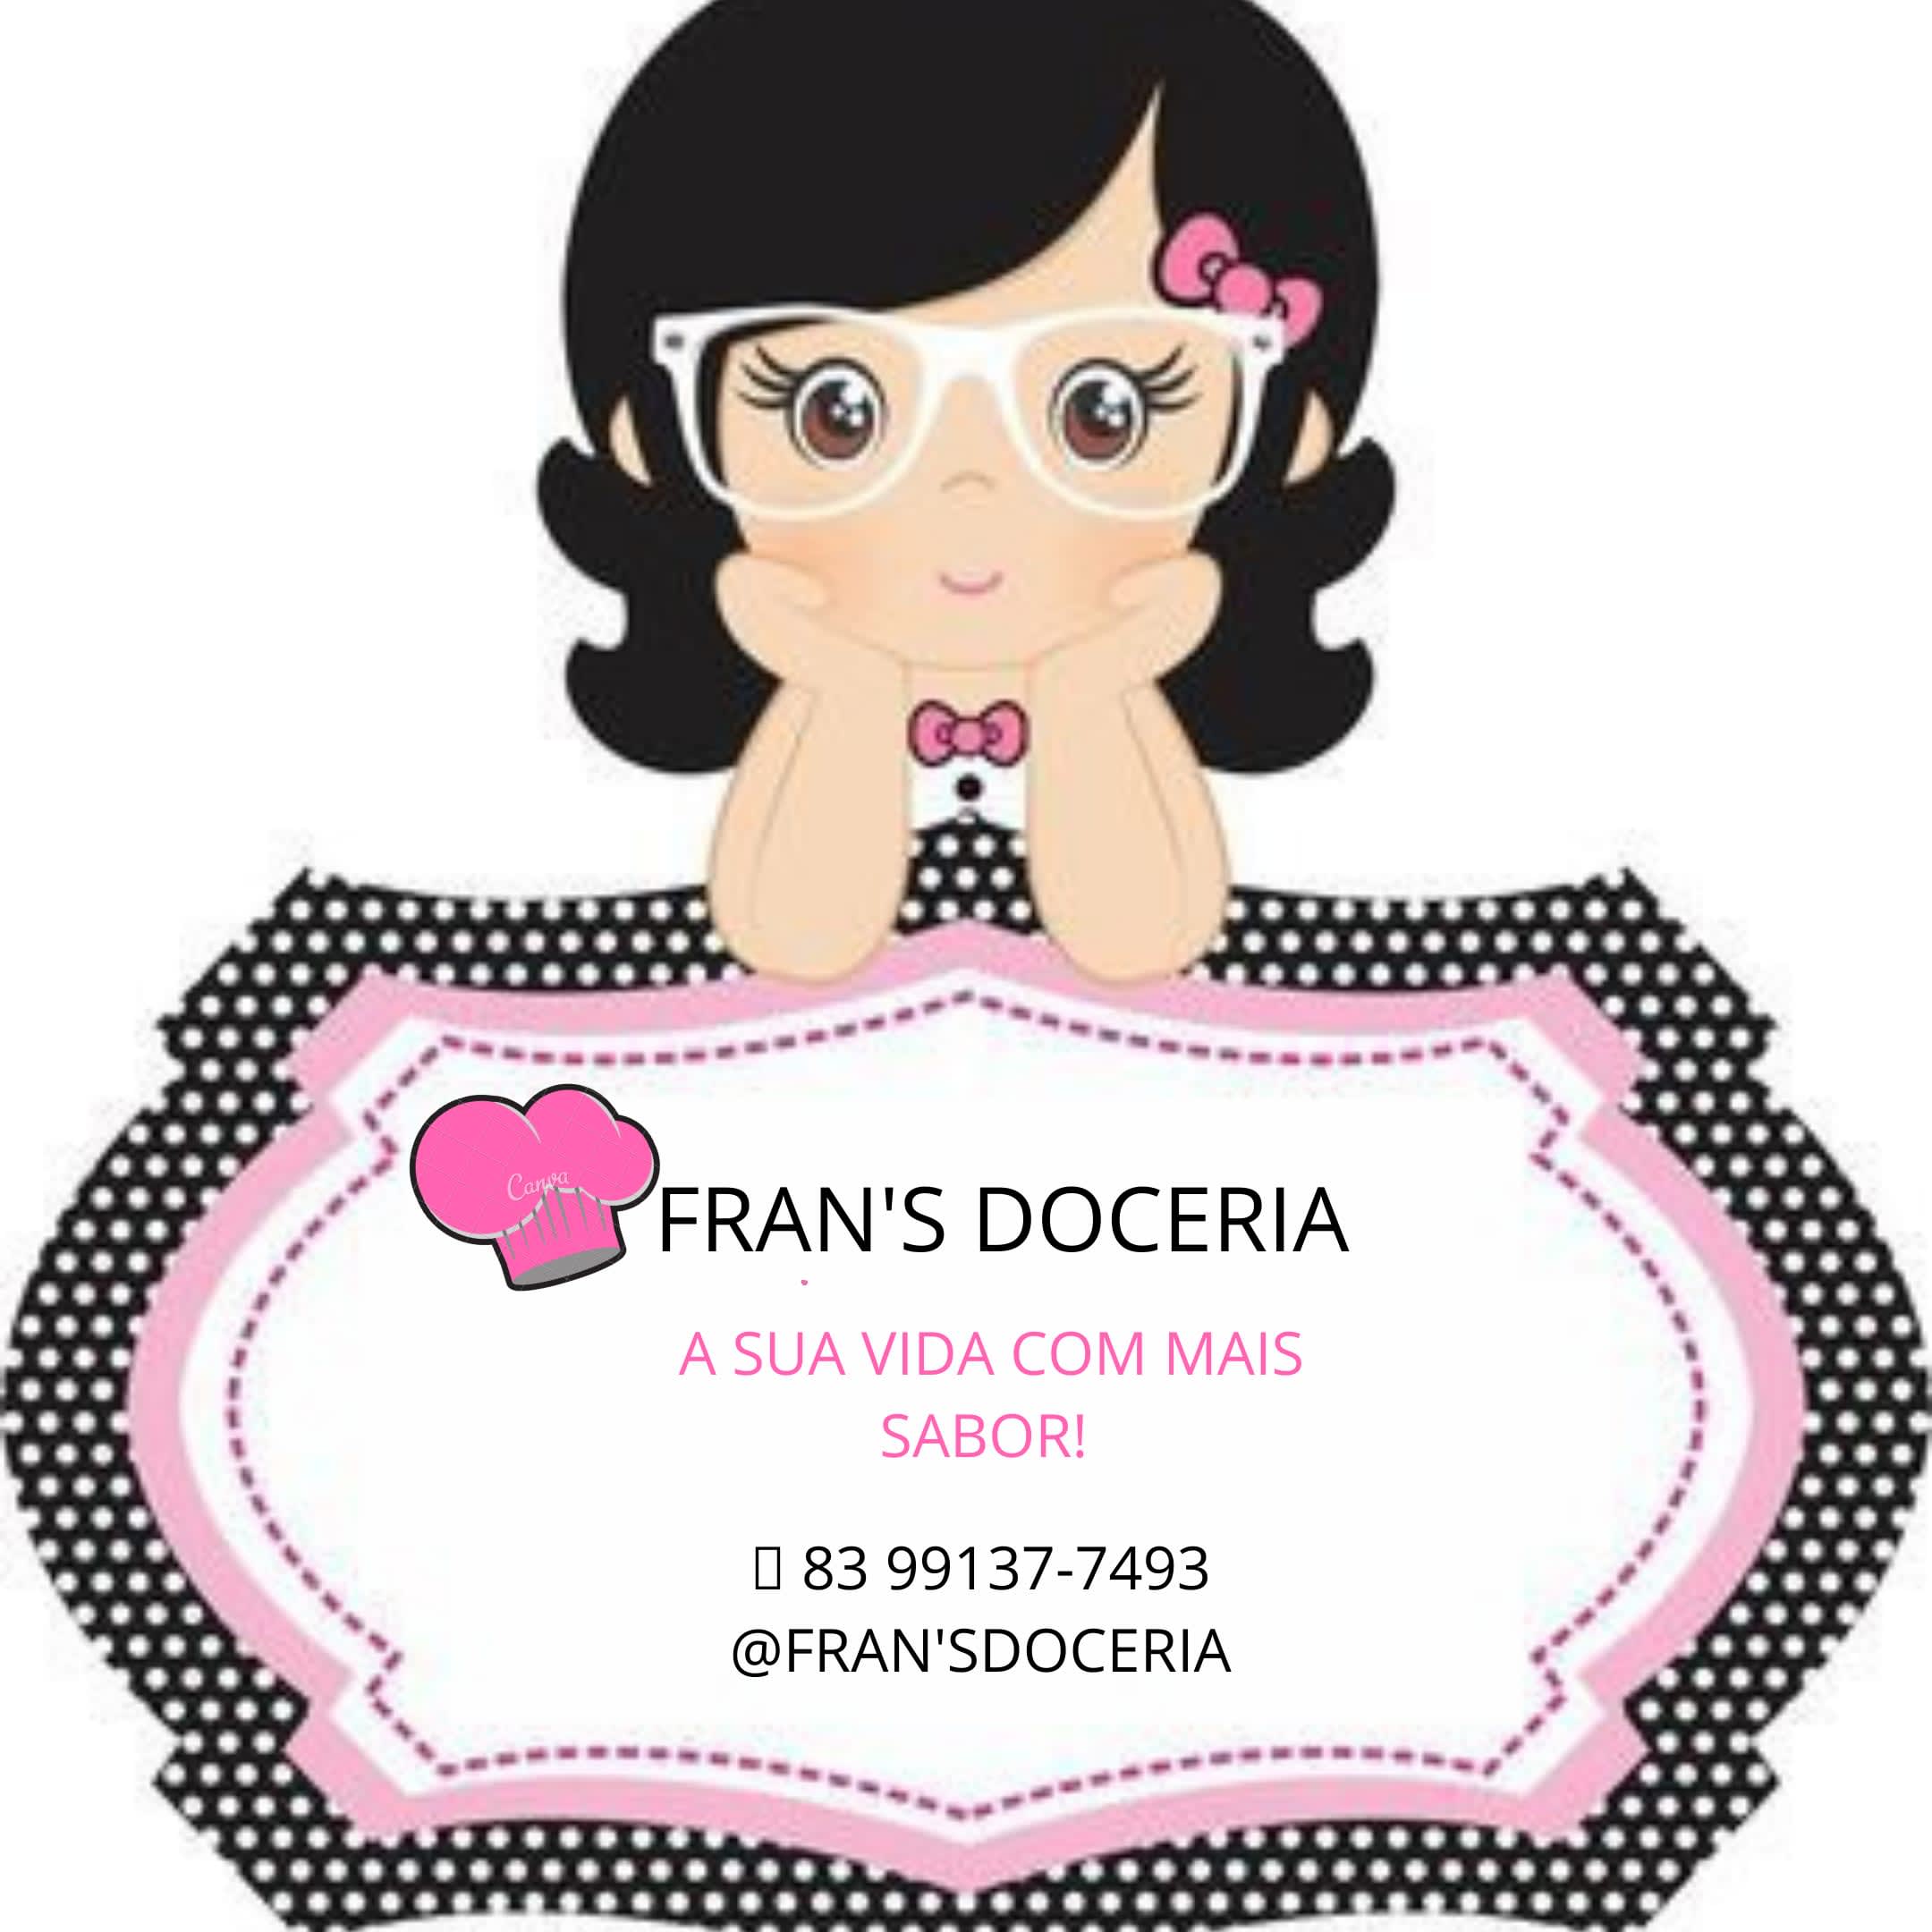 Fran's Doceria